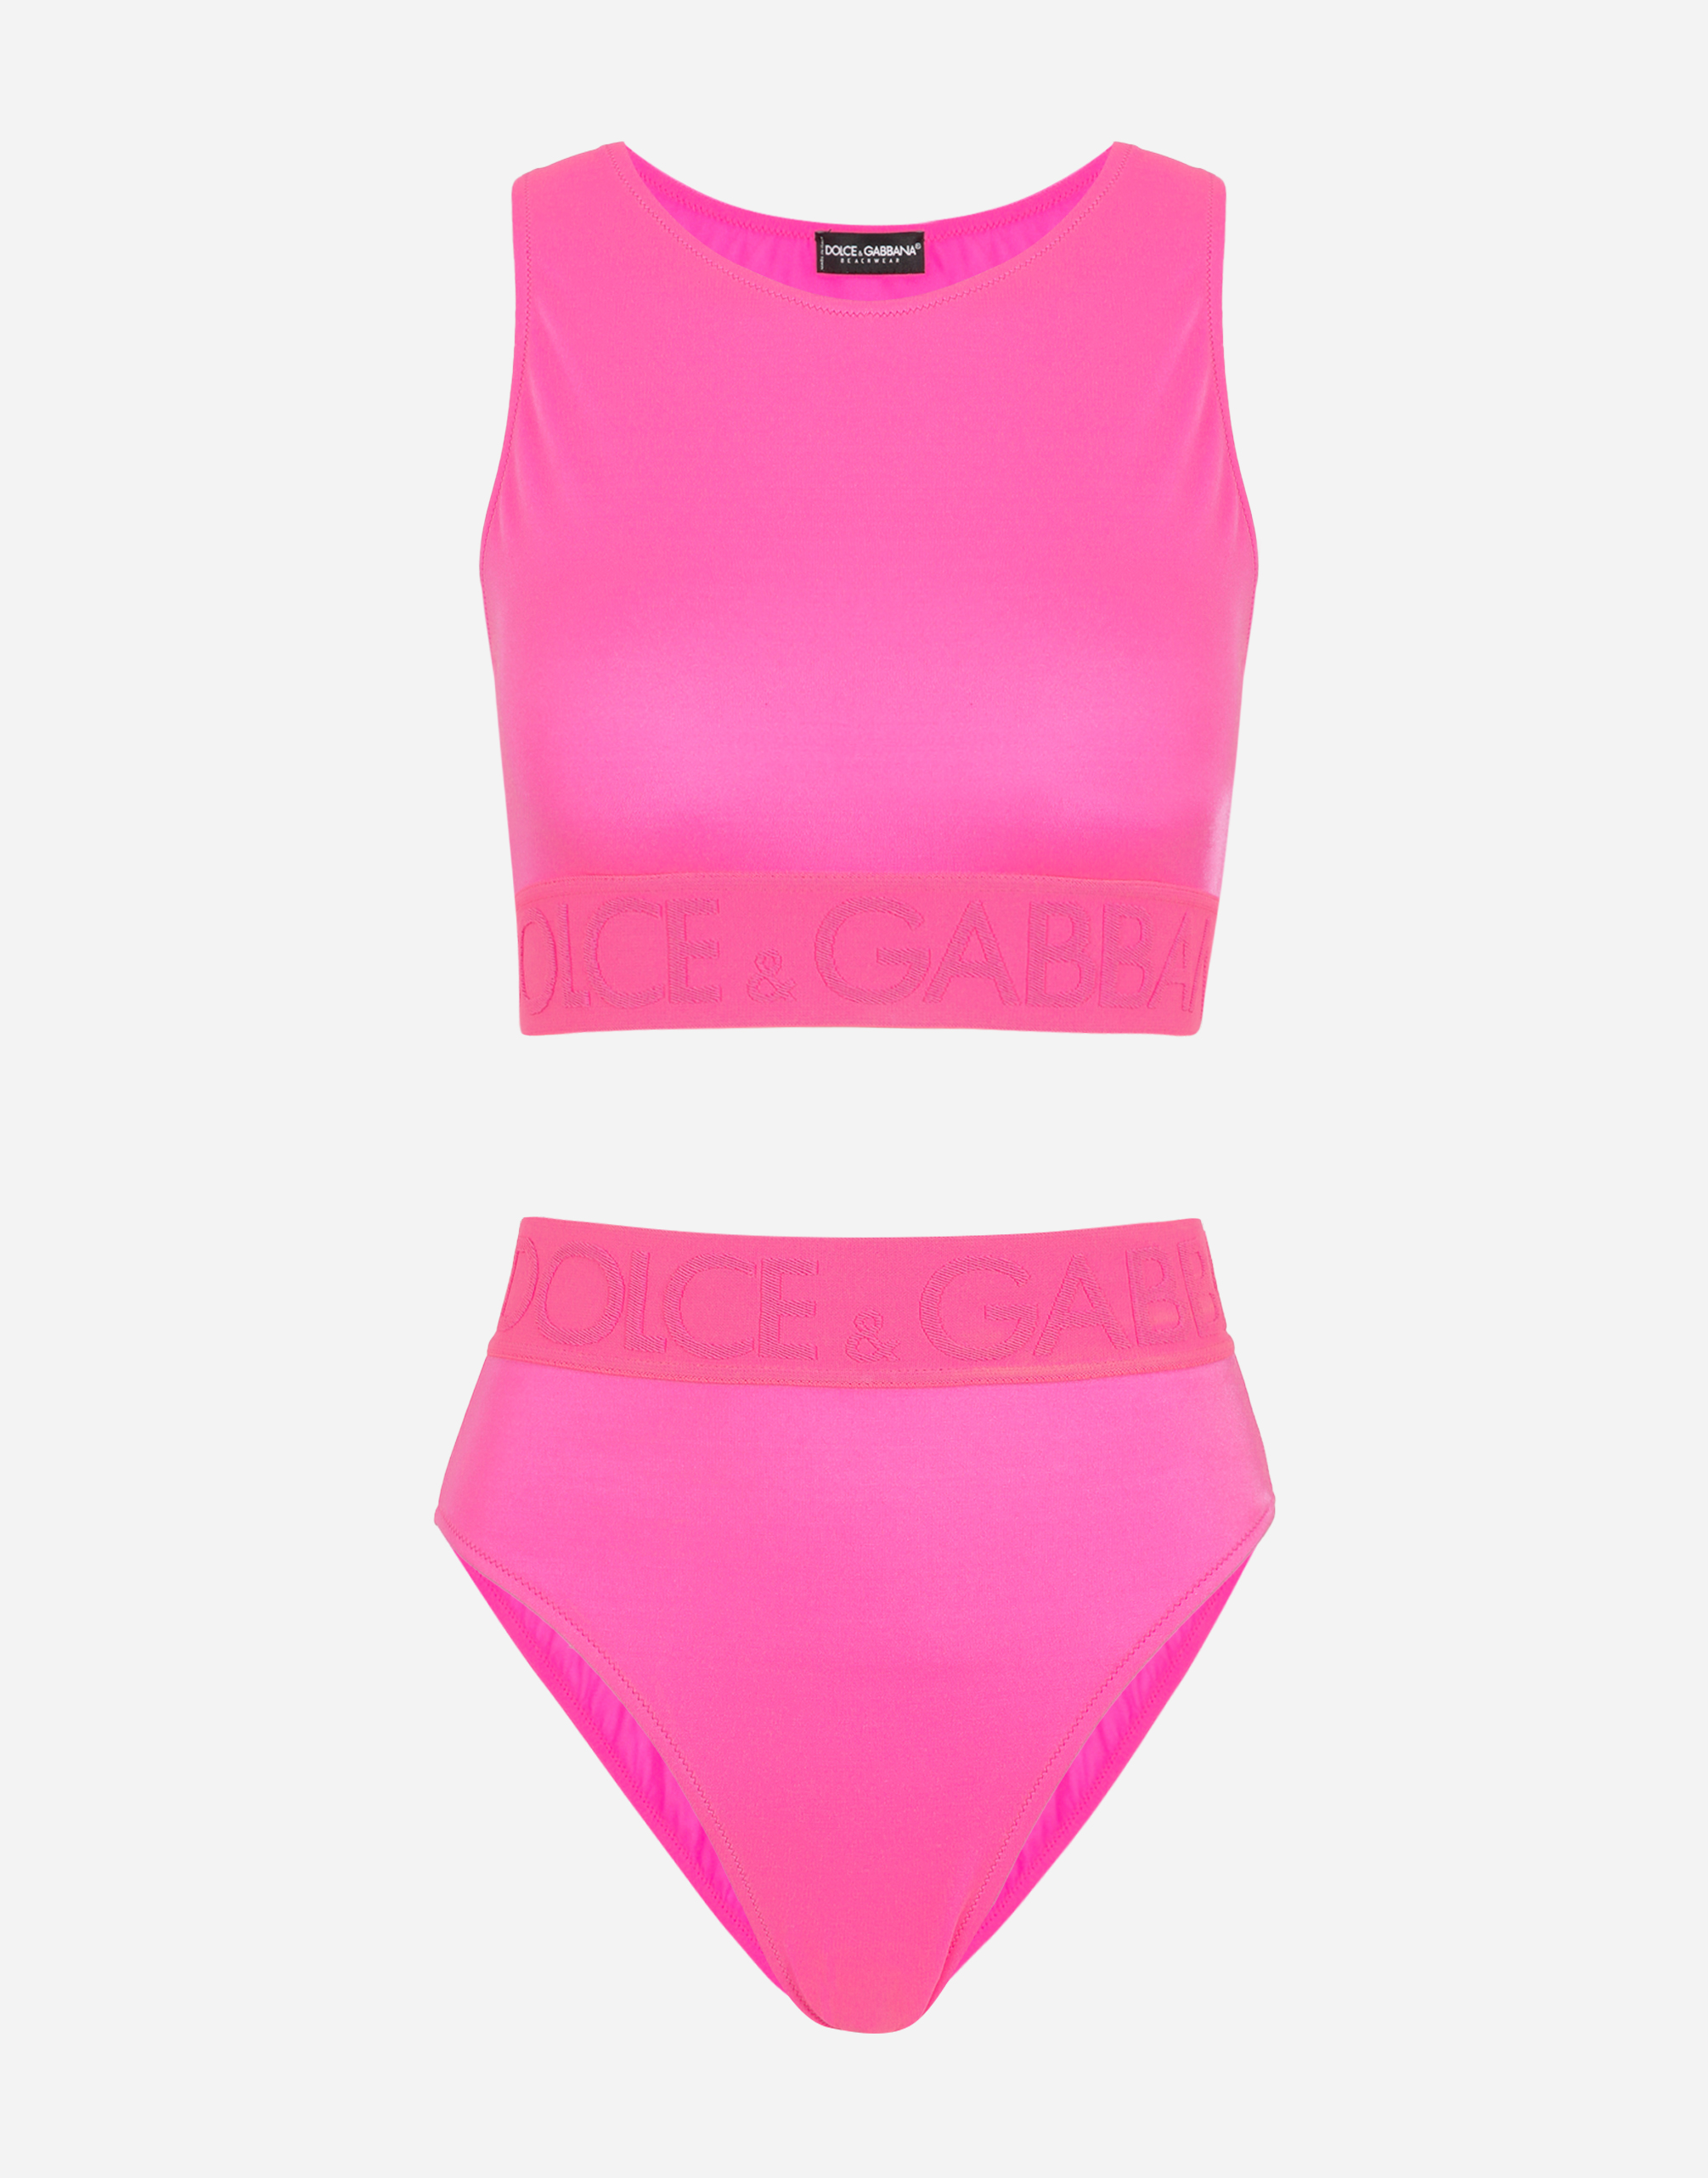 Bikini top with branded elastic in Fuchsia